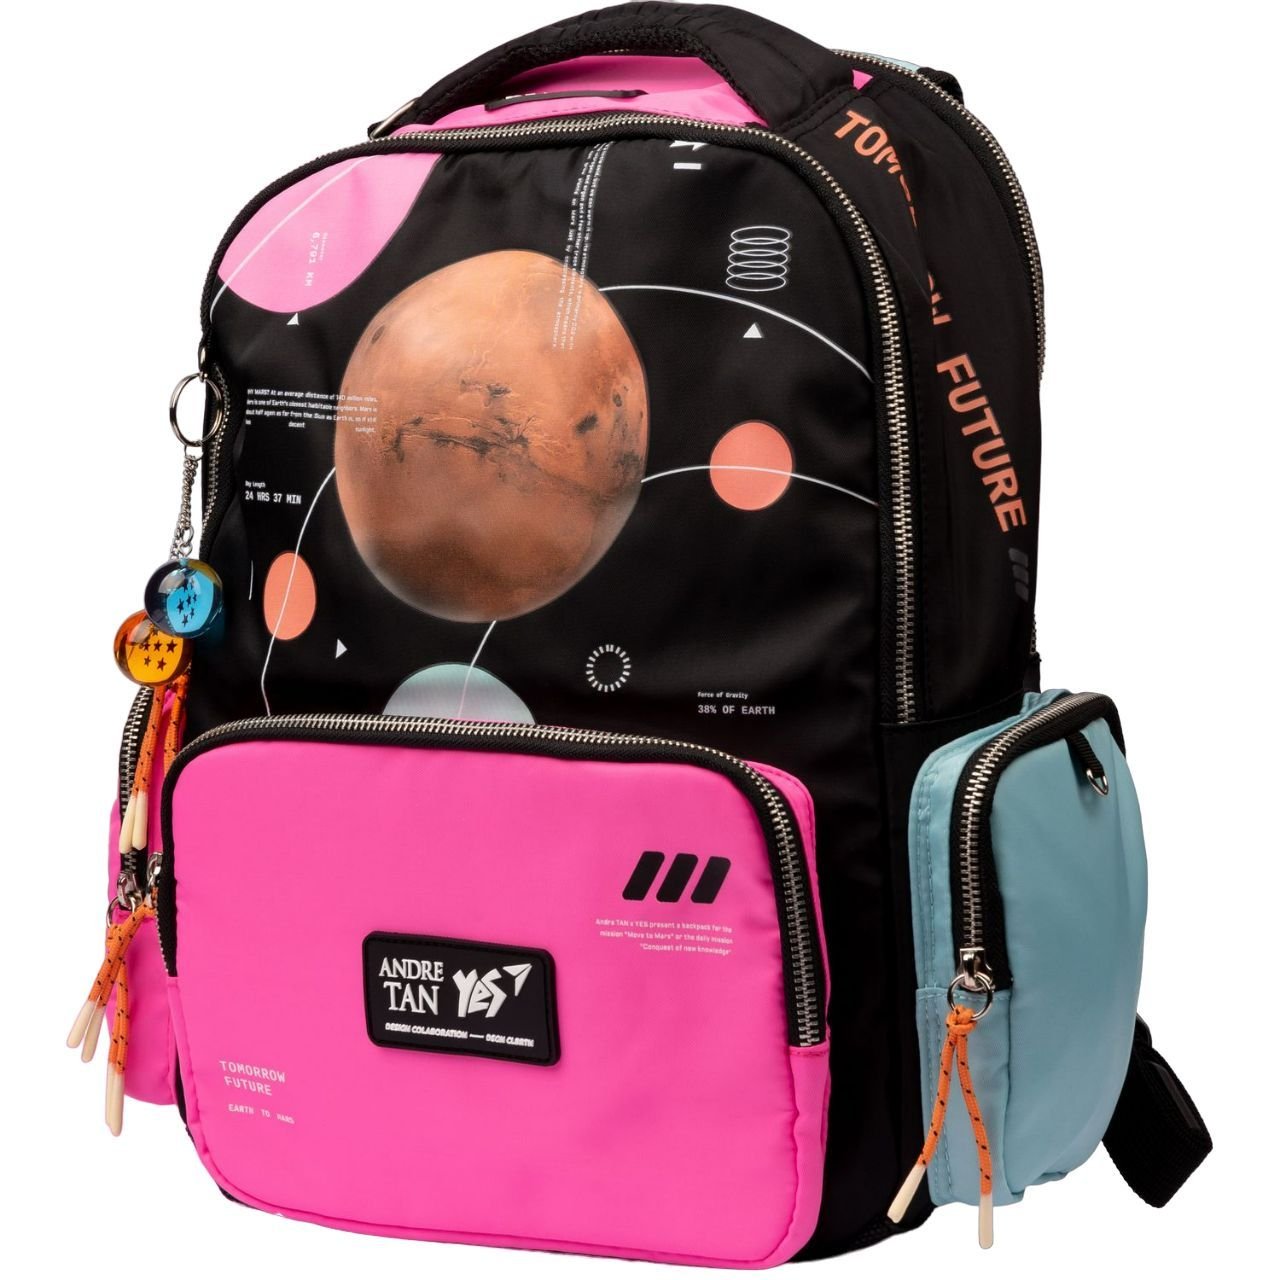 Рюкзак Yes TS-93 Andre Tan Space Pink, черный с розовым (559036) - фото 1